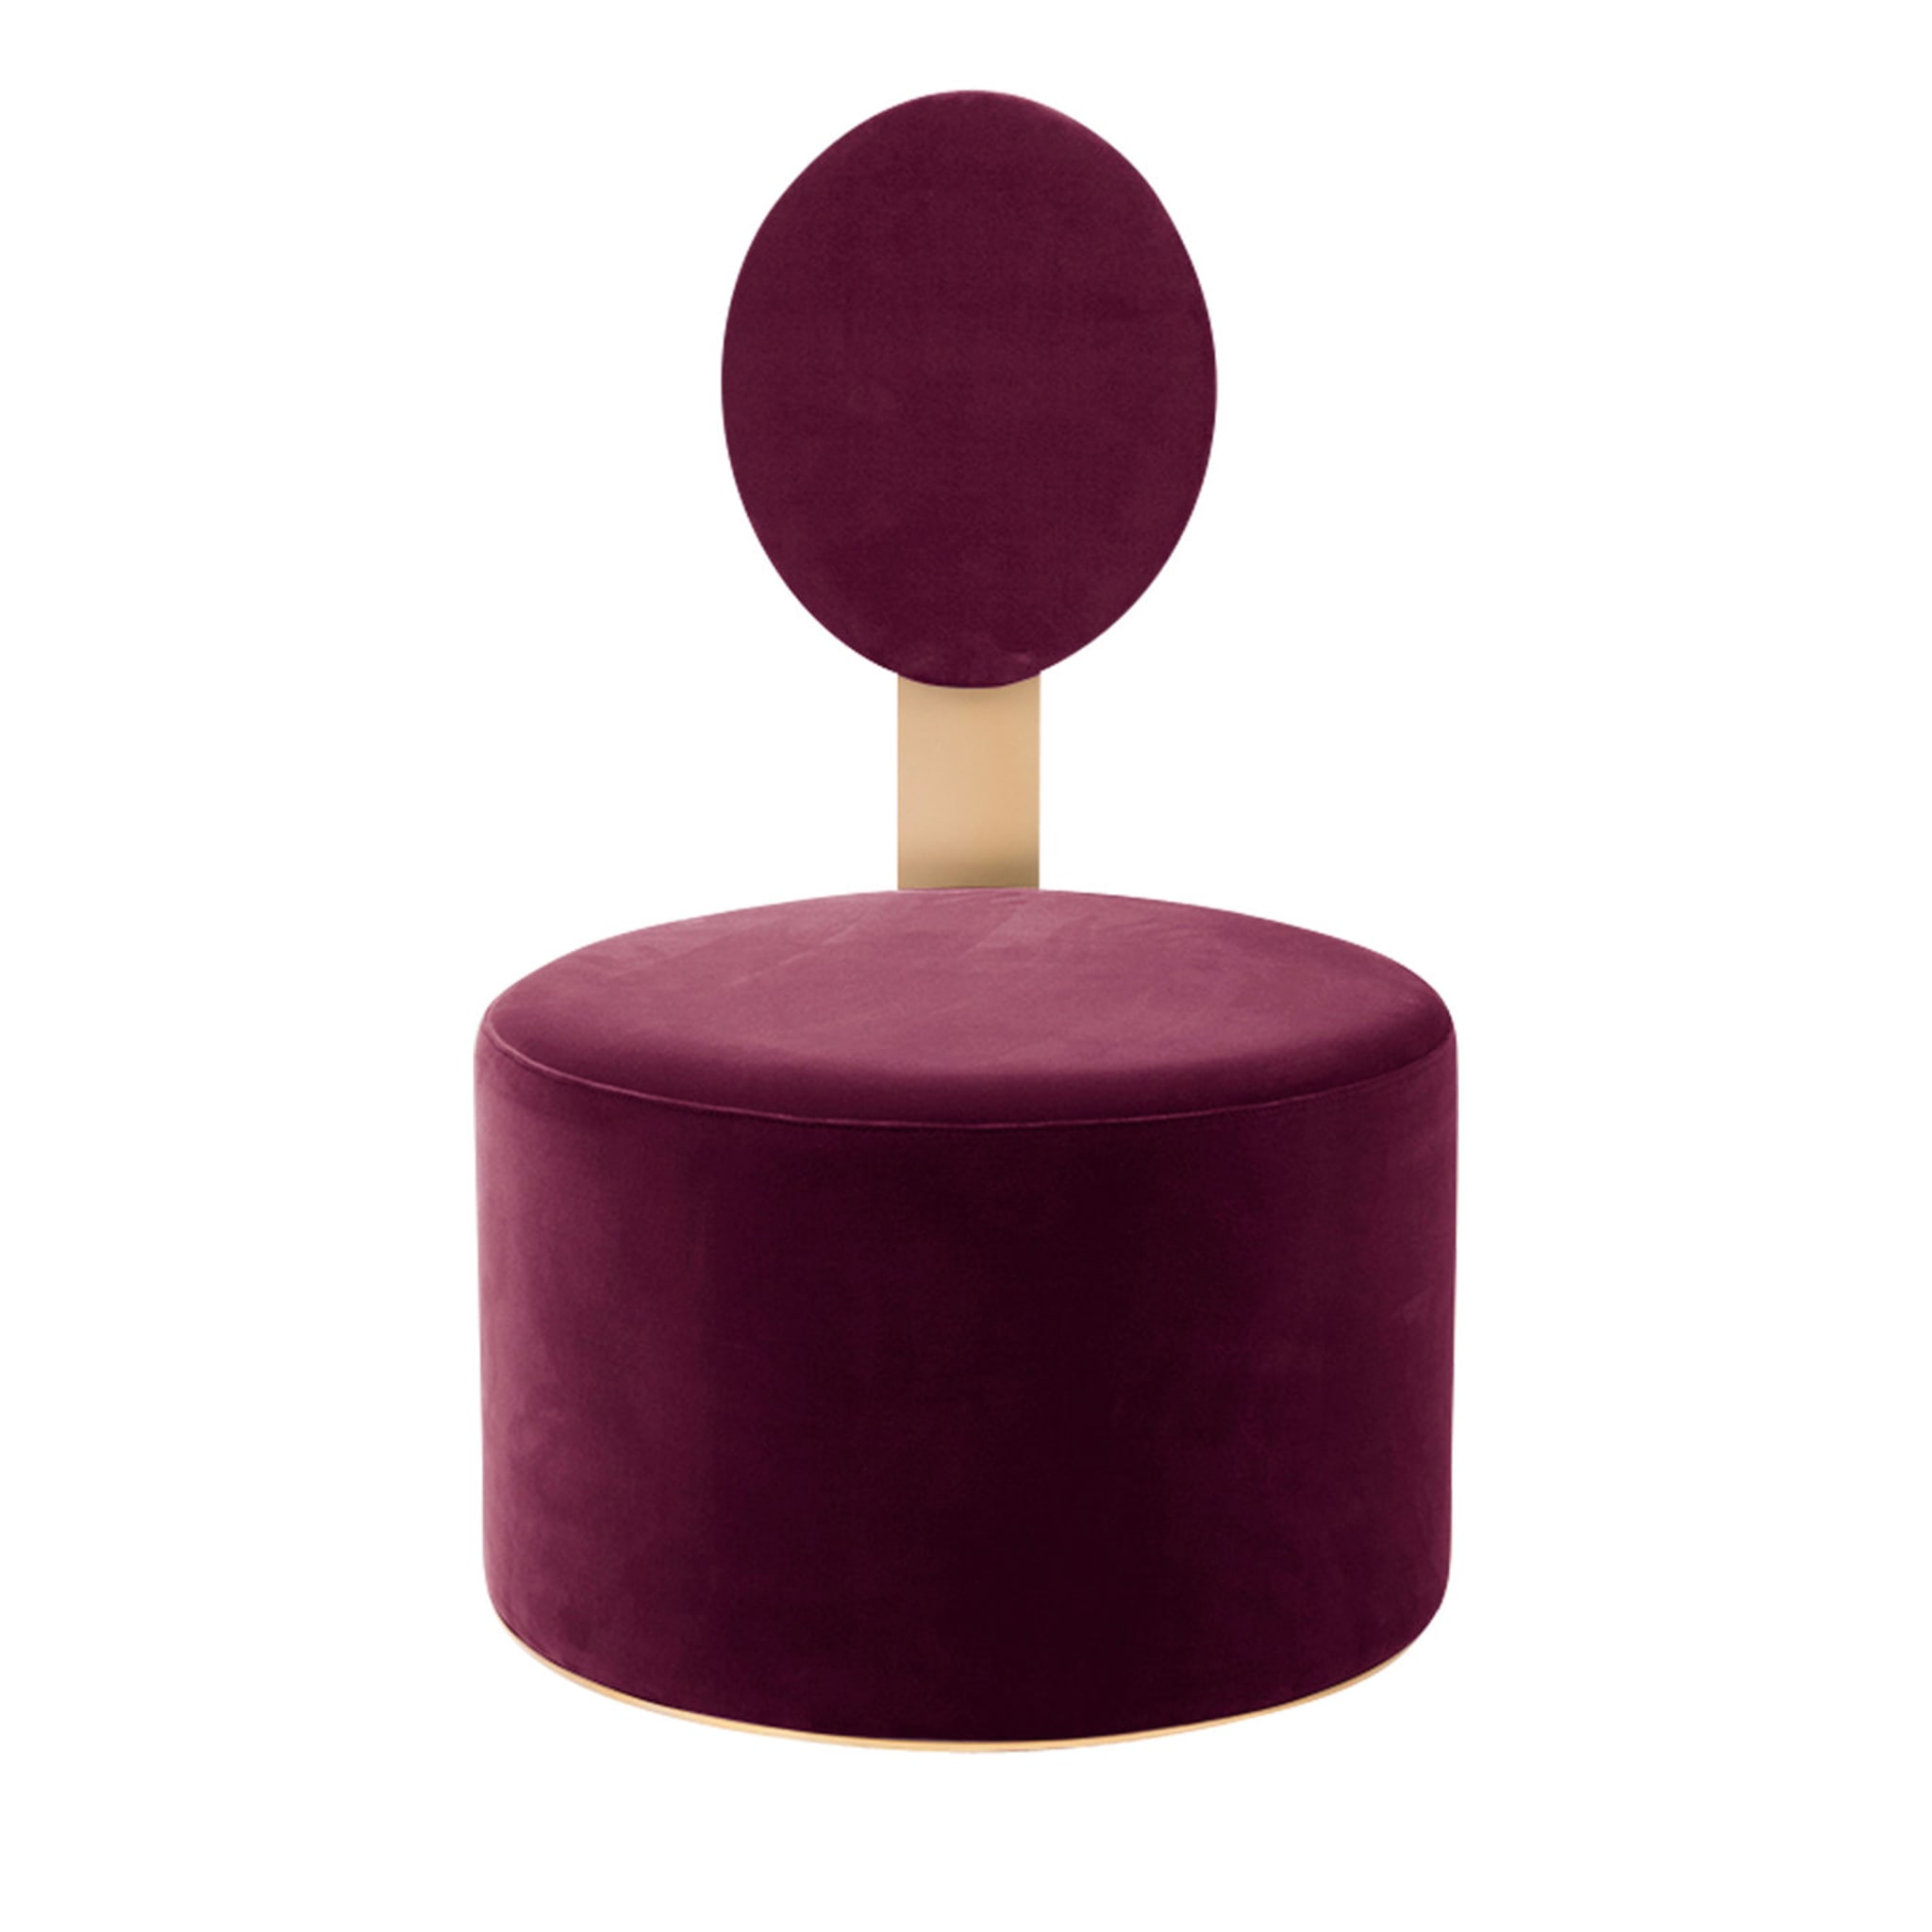 Pop Purple Chair by Artefatto Design Studio - Main view